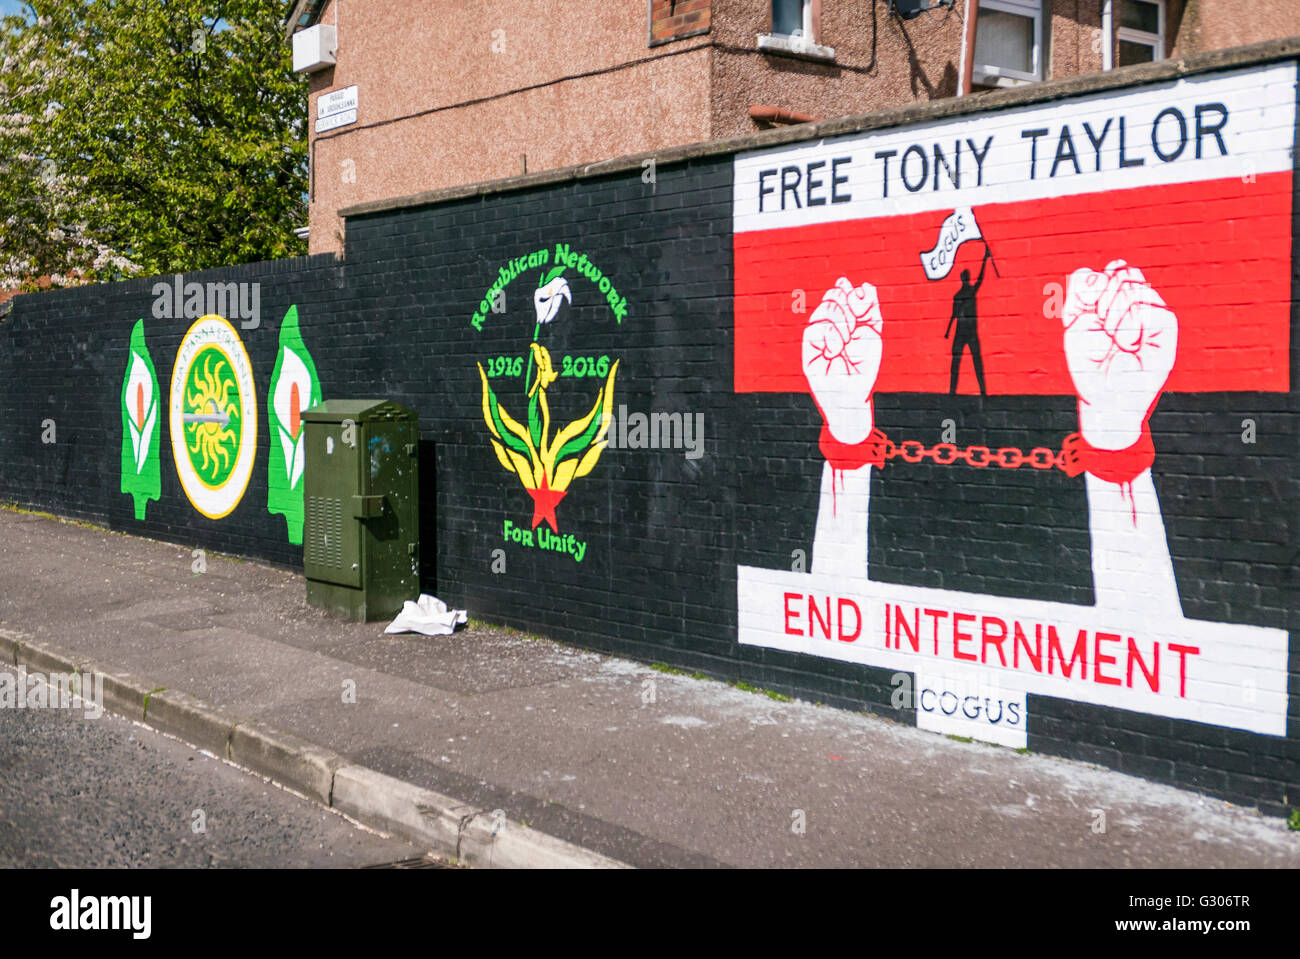 Belfast Wandbilder in einem republikanischen Gebiet fordert Derry republikanischen Tony Taylor nach der Rückgabe Foll ins Gefängnis befreit werden Stockfoto